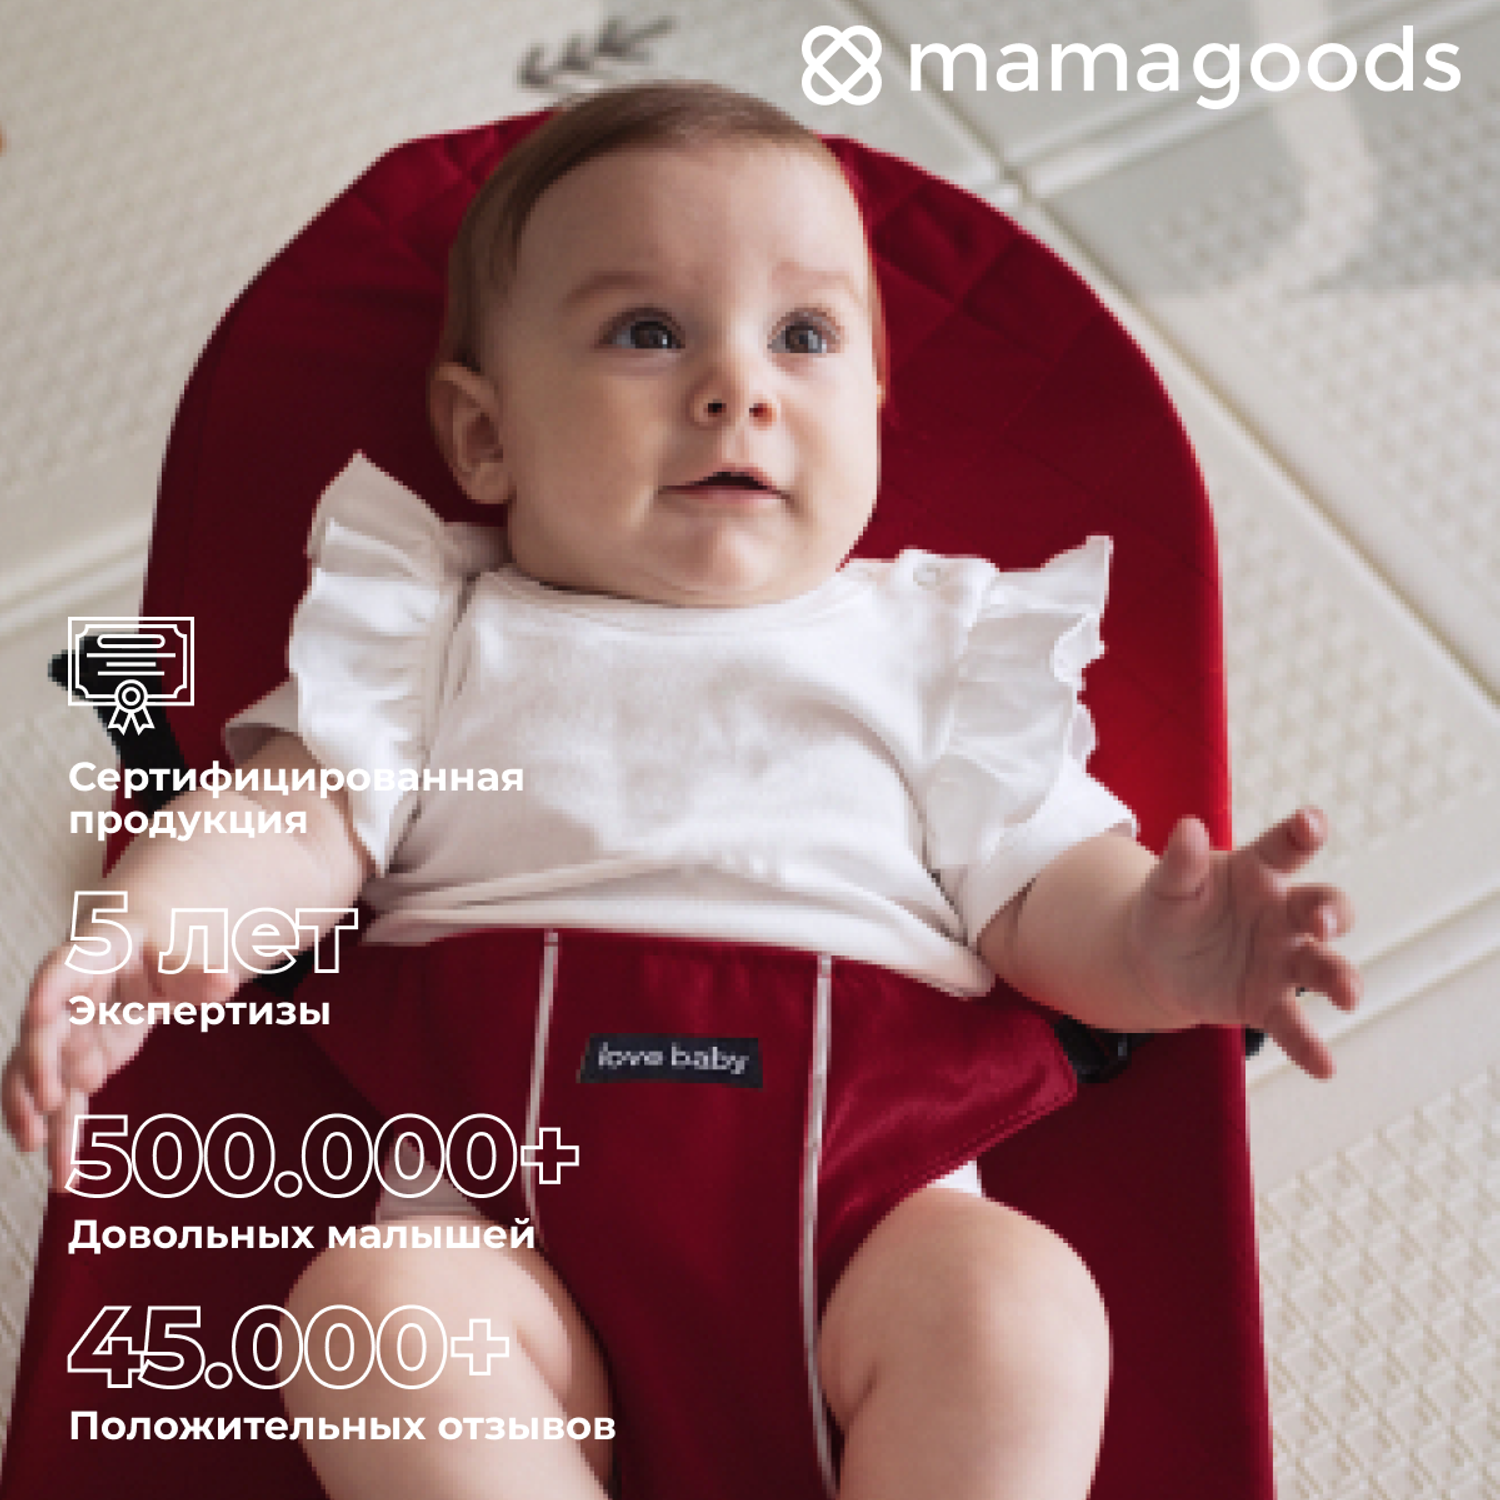 Детский складной шезлонг Mamagoods для новорожденных от 0 кресло качалка для малышей B4 - фото 11